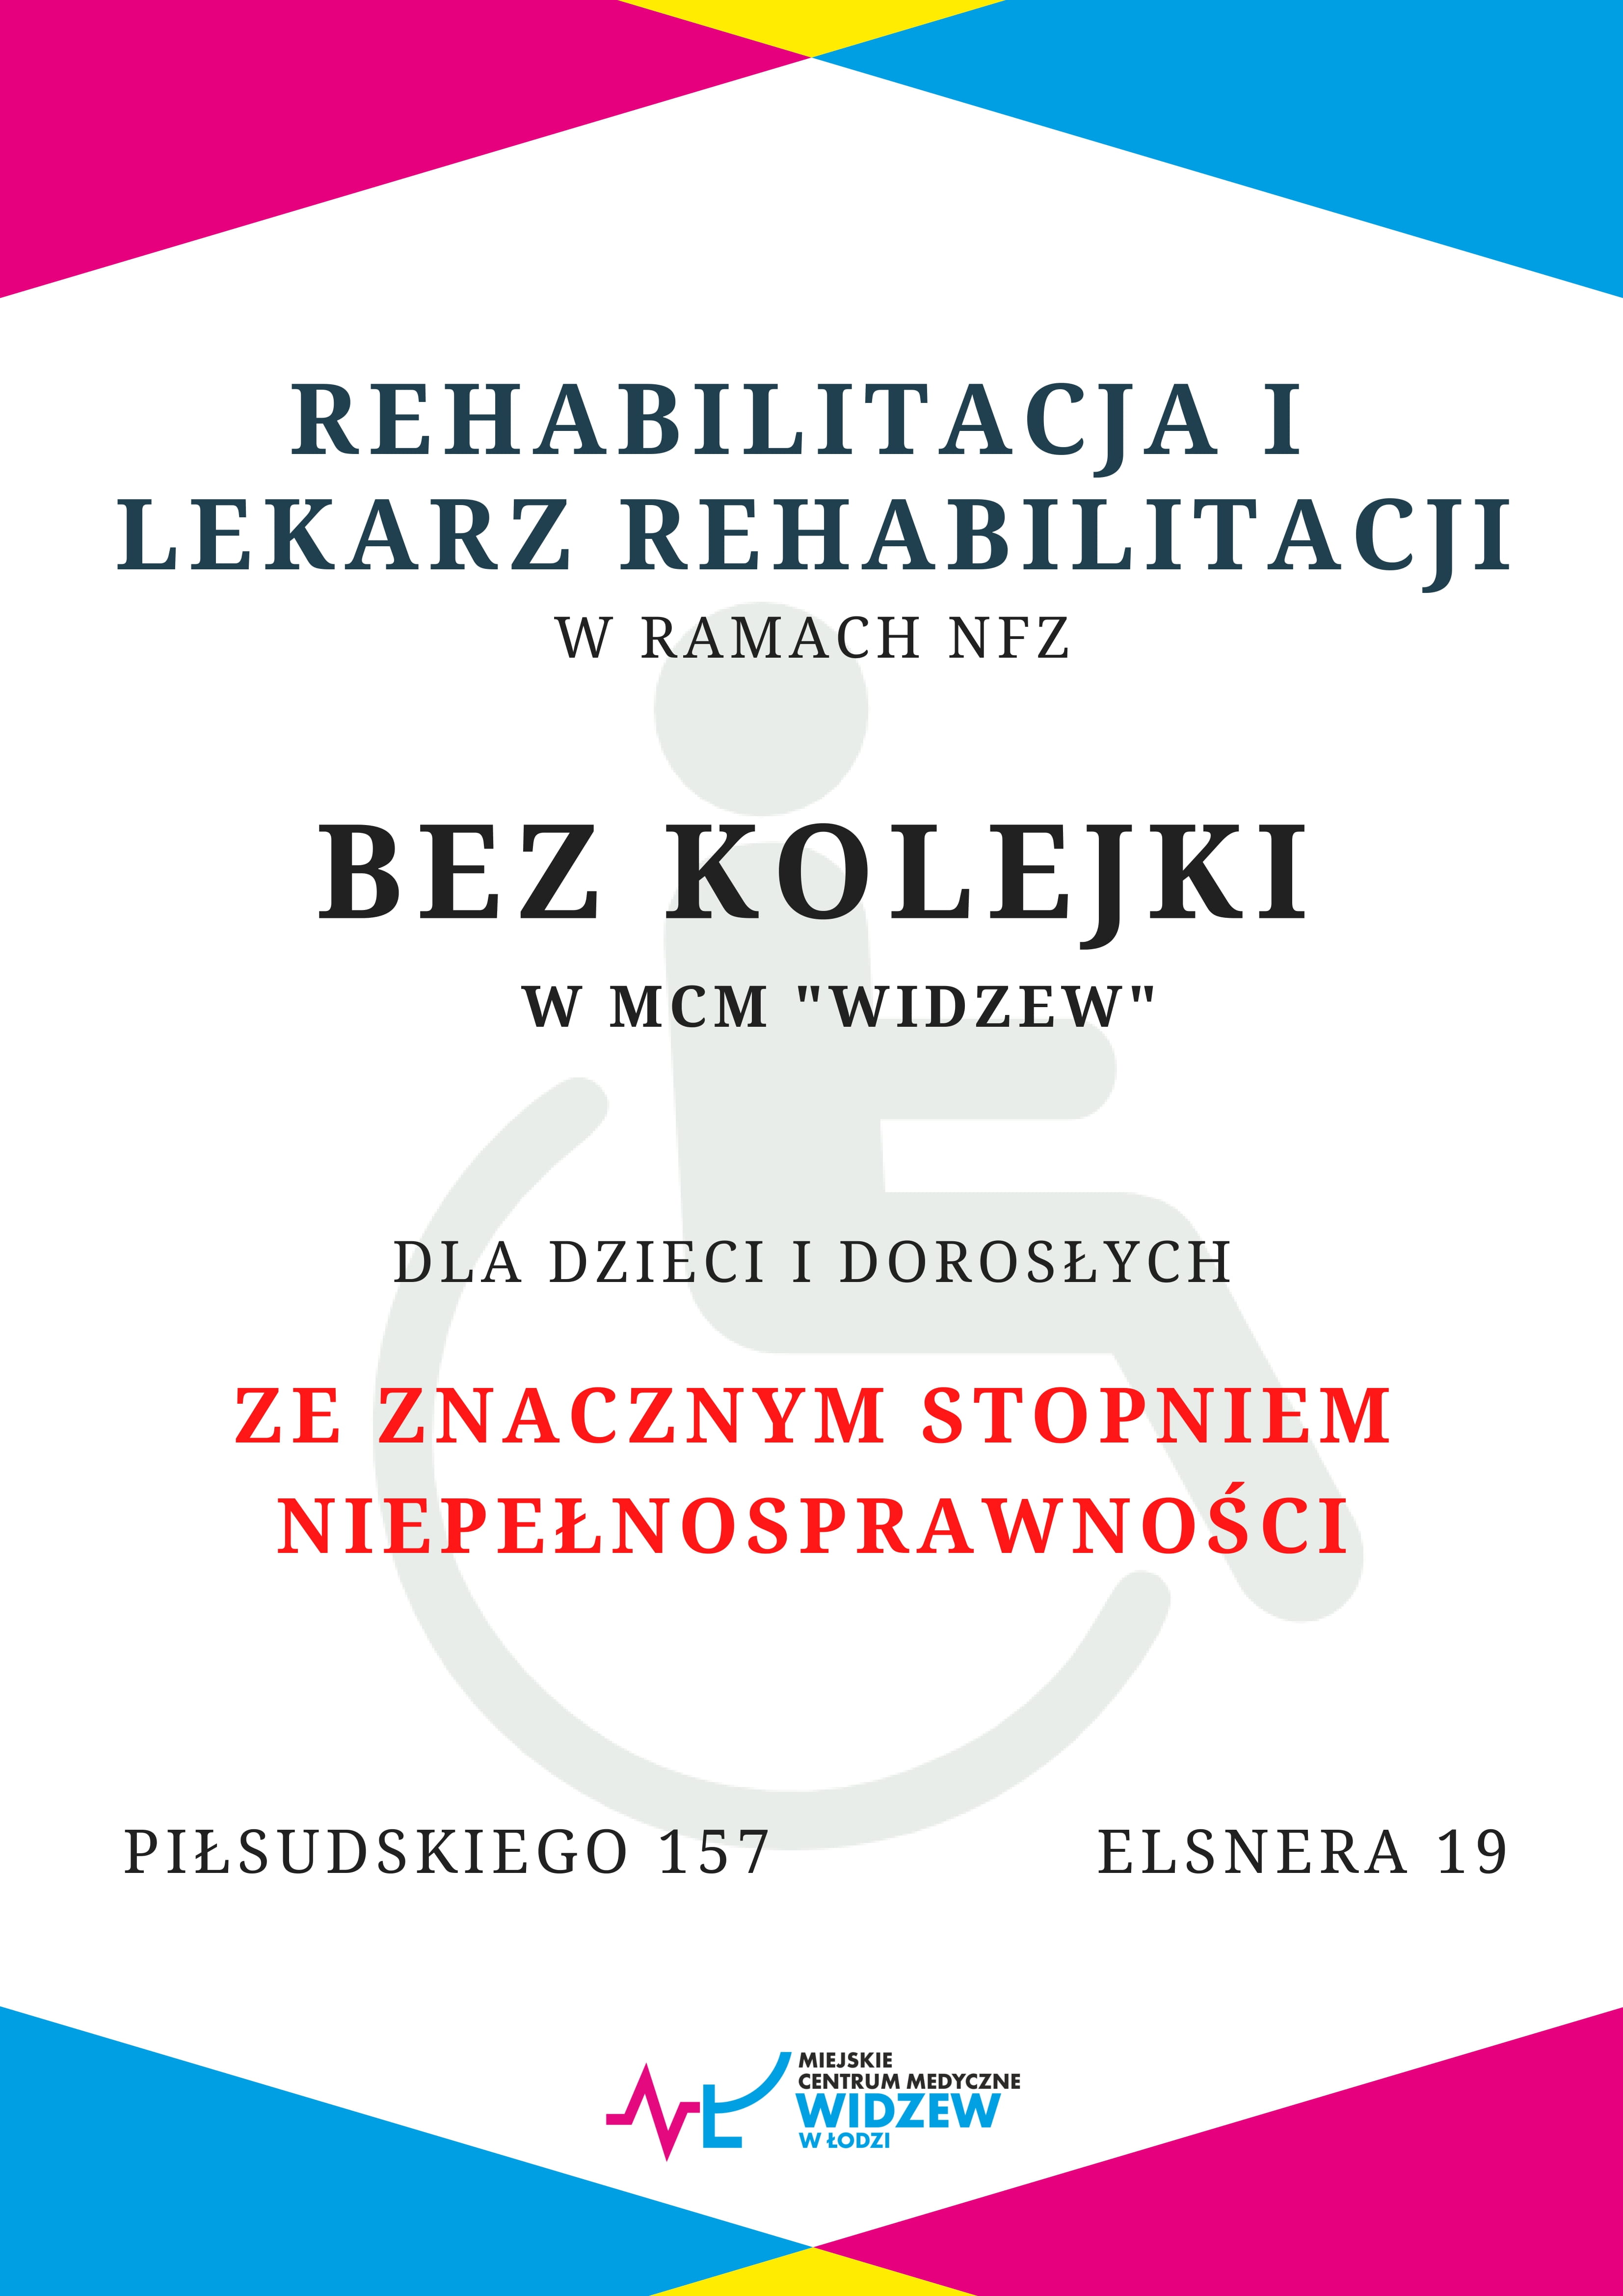 Rehablitacja w MCM Widzew - piłsudskiego 157, Elsnera 19